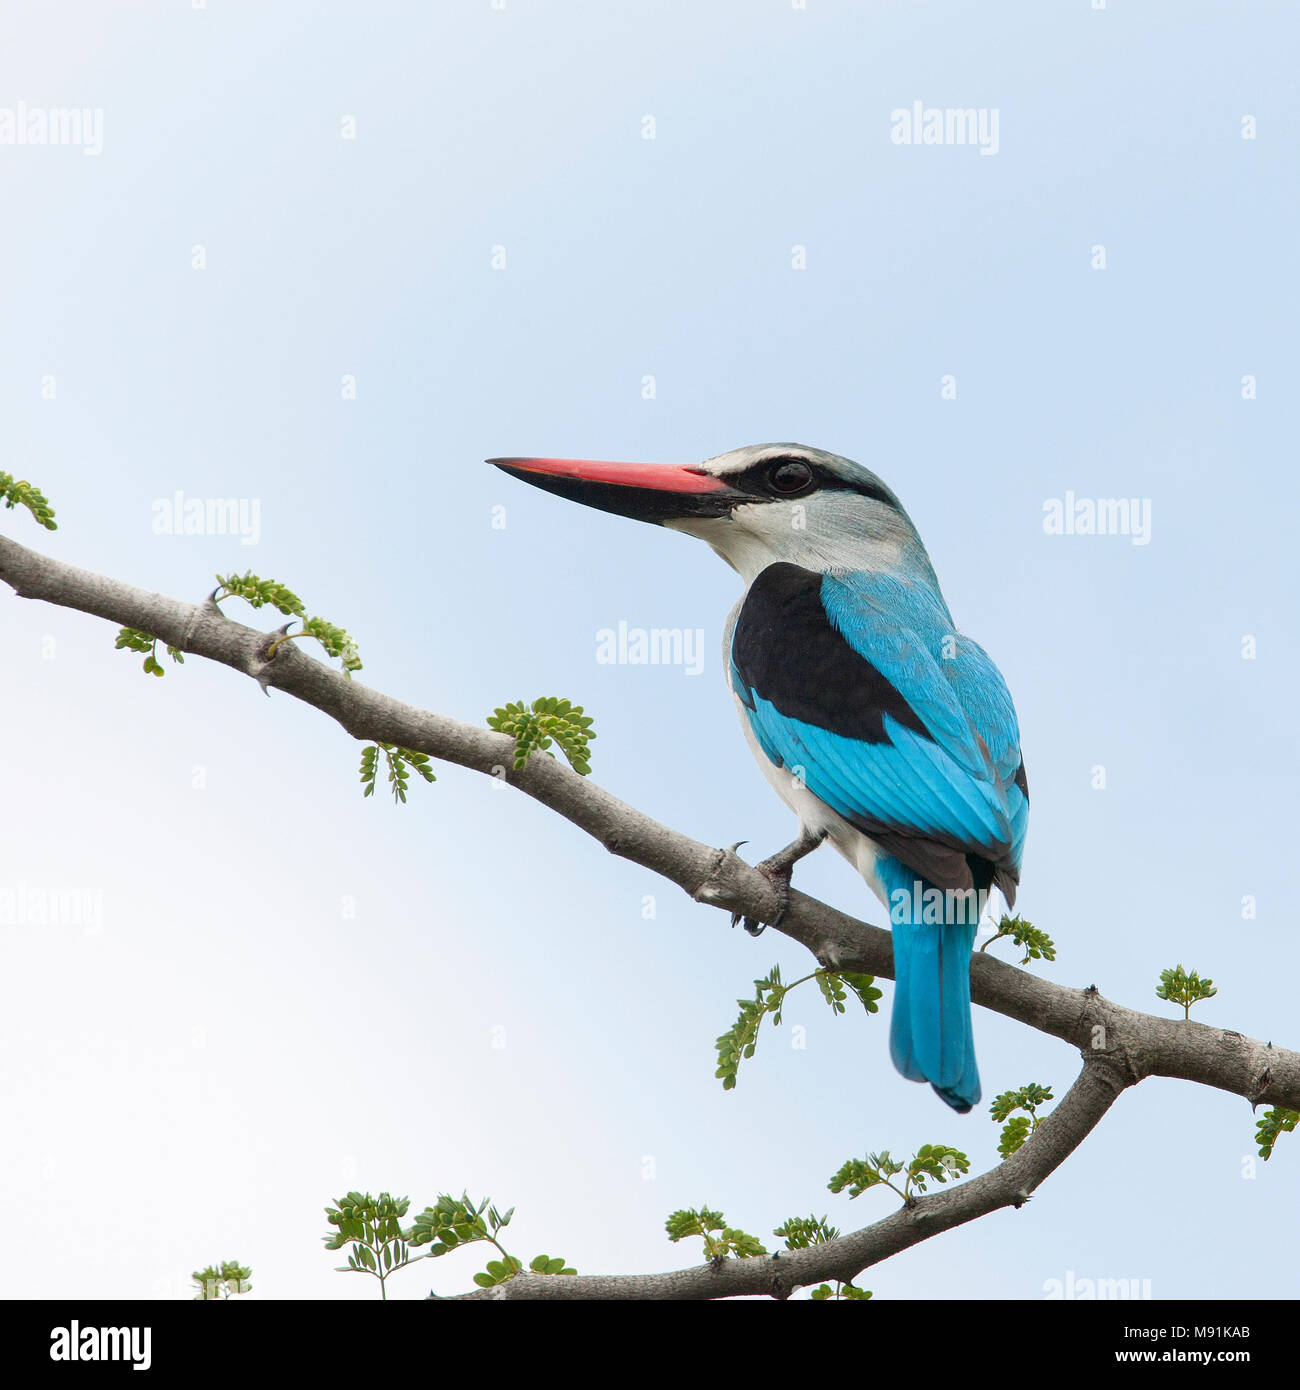 Senegalese IJsvogel, Woodland Kingfisher Stock Photo